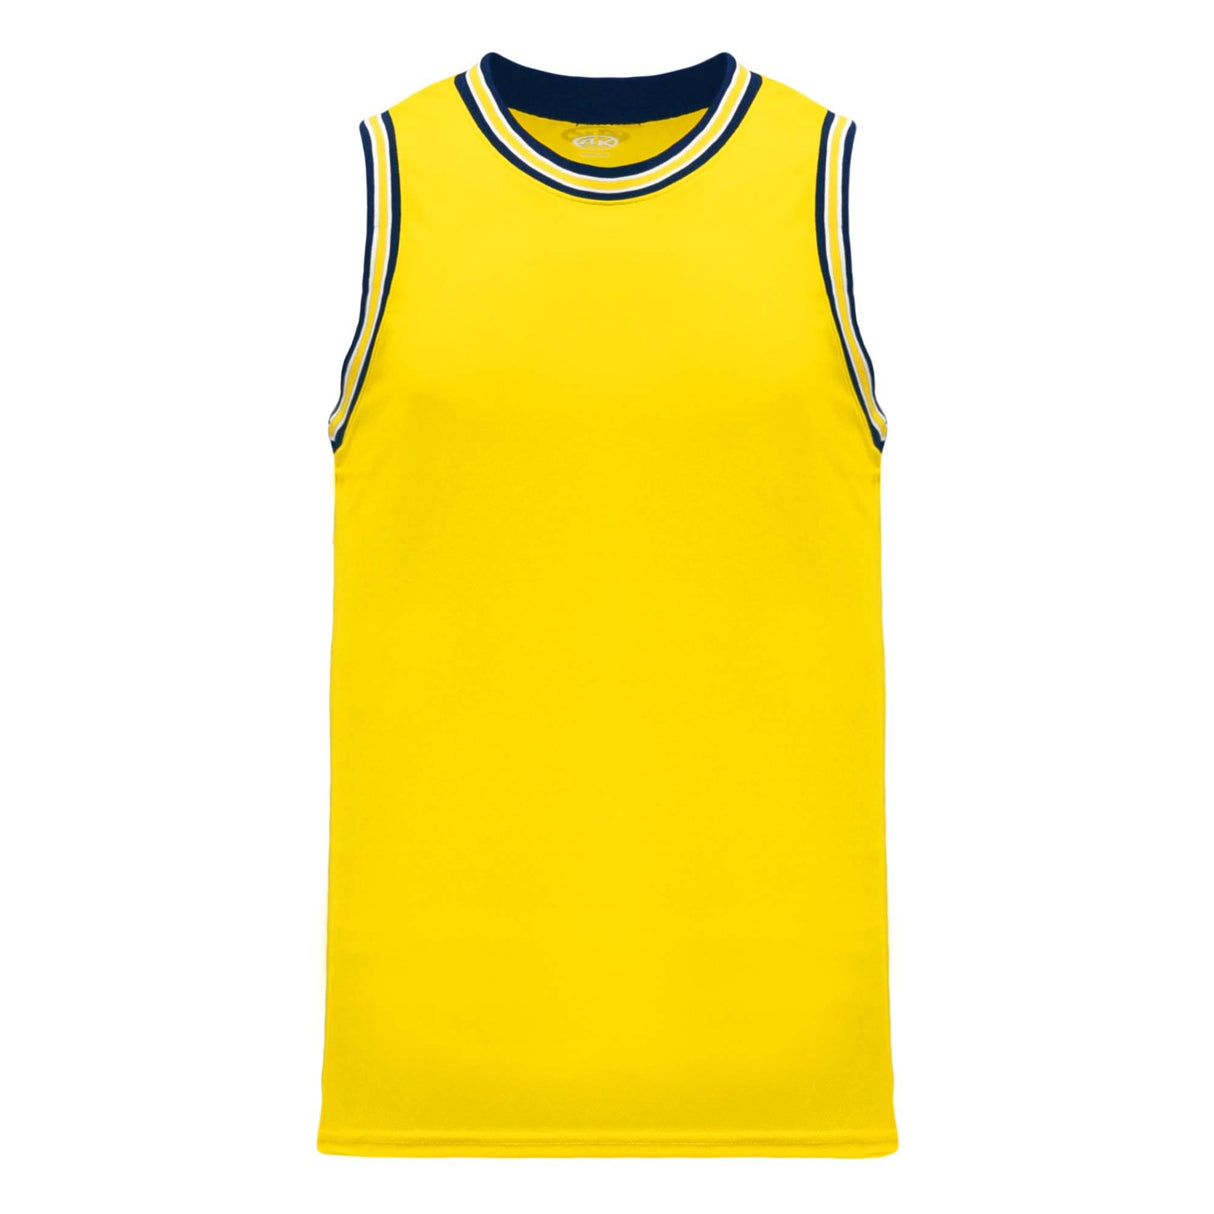 Athletic Knit B1710 camisole de basketball jaune marine